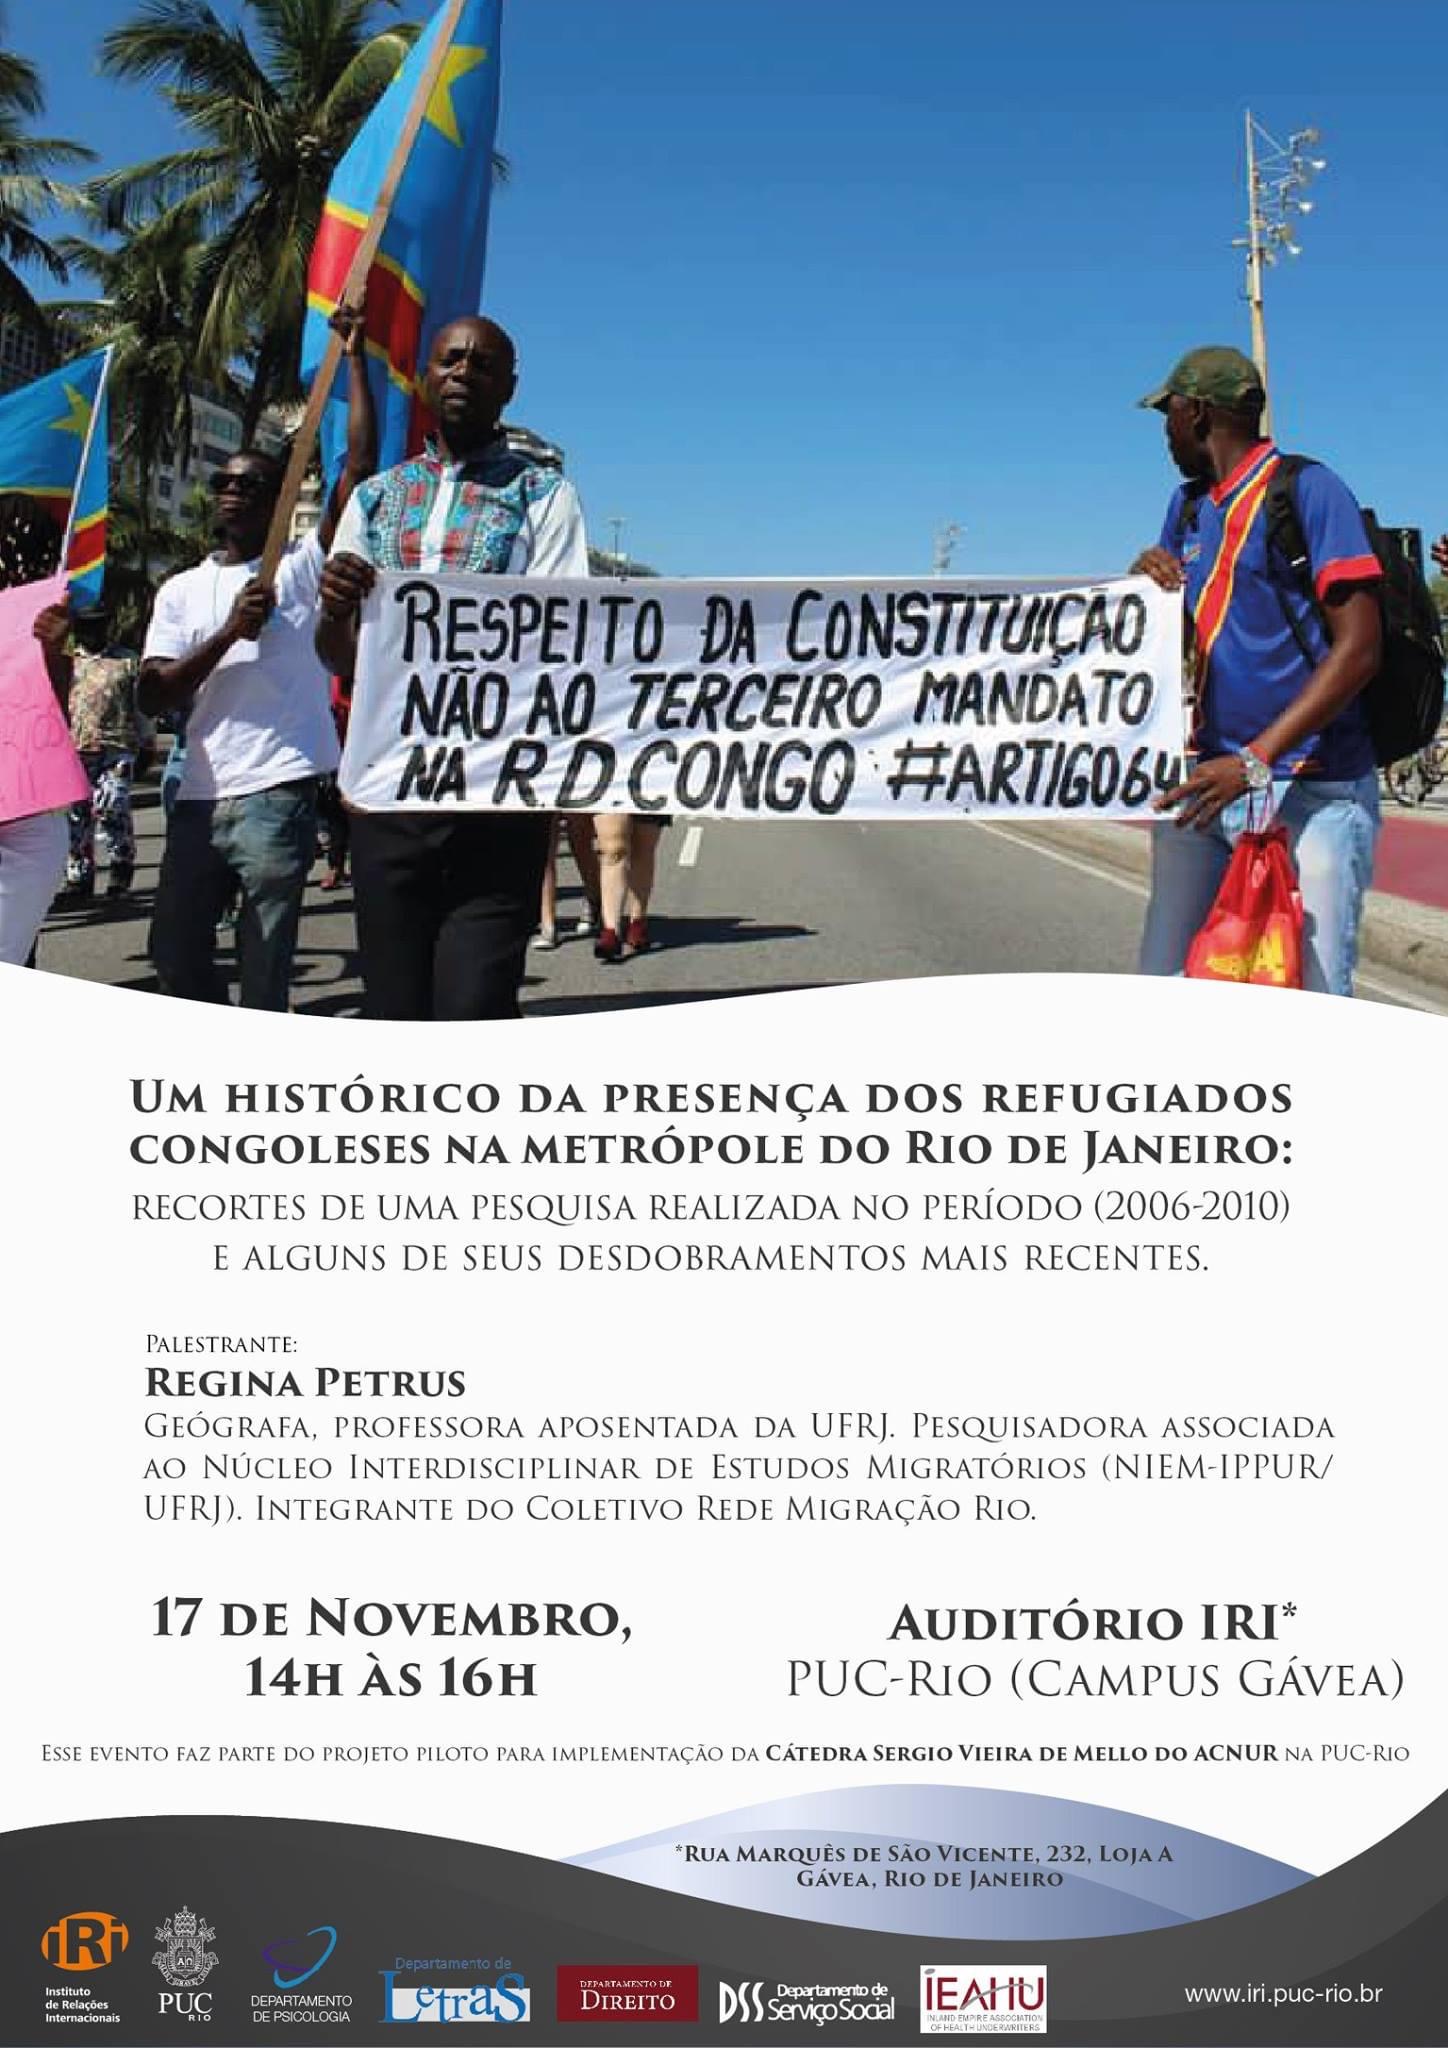 Um histórico da presença dos refugiados congoleses na metrópole do Rio de Janeiro